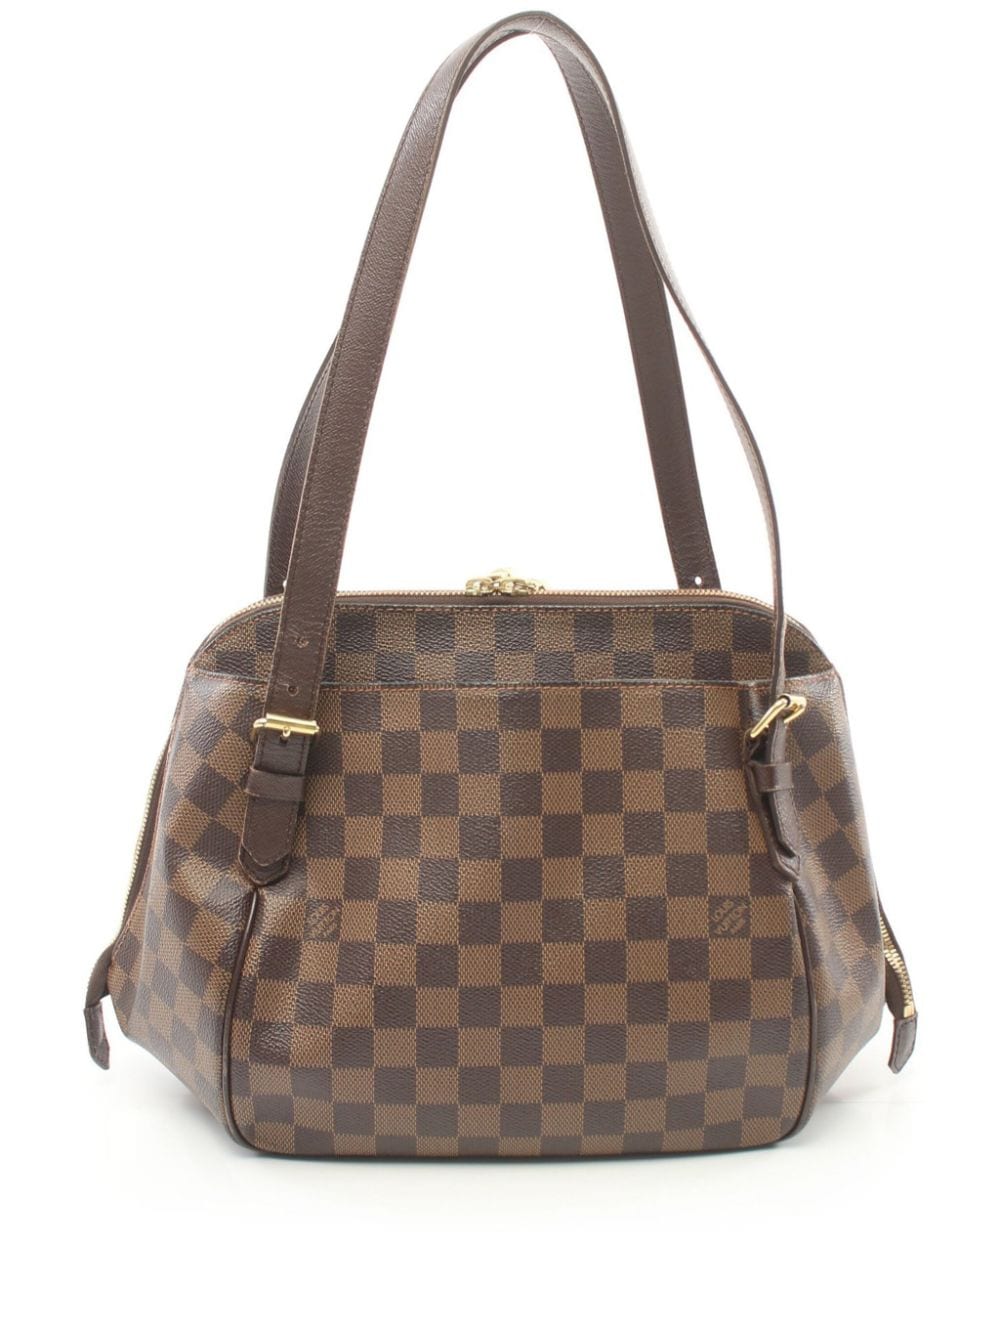 Pre-owned Louis Vuitton 2006 Belem Mm Handbag In Brown